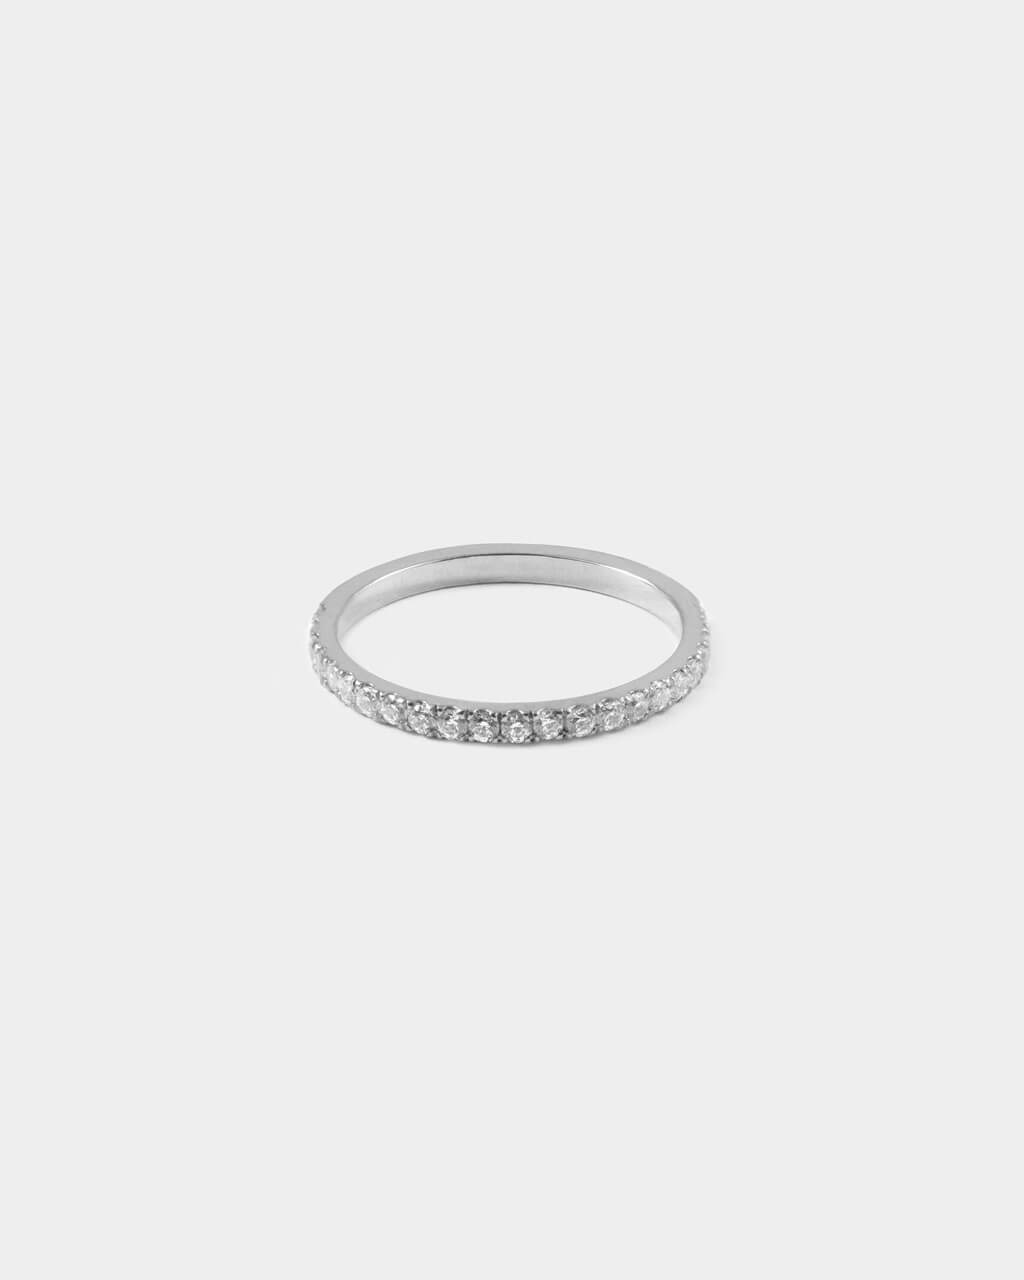 Produktfoto von Half Eternity Ring aus Weißgold mit Diamanten besetzt. 